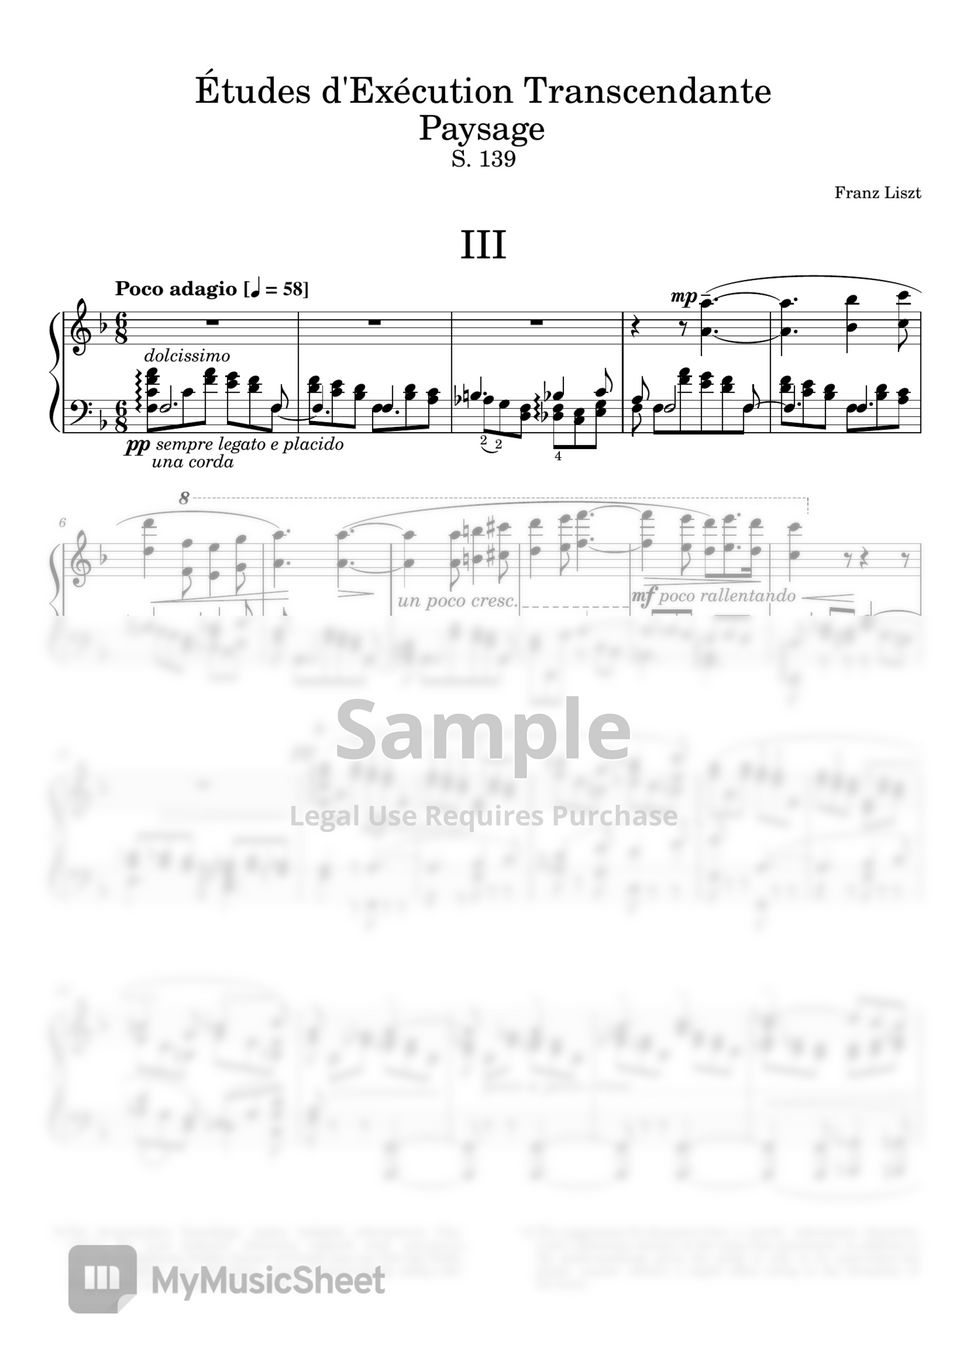 liszt - Liszt - Transcendental Études No.3 by Fortepian